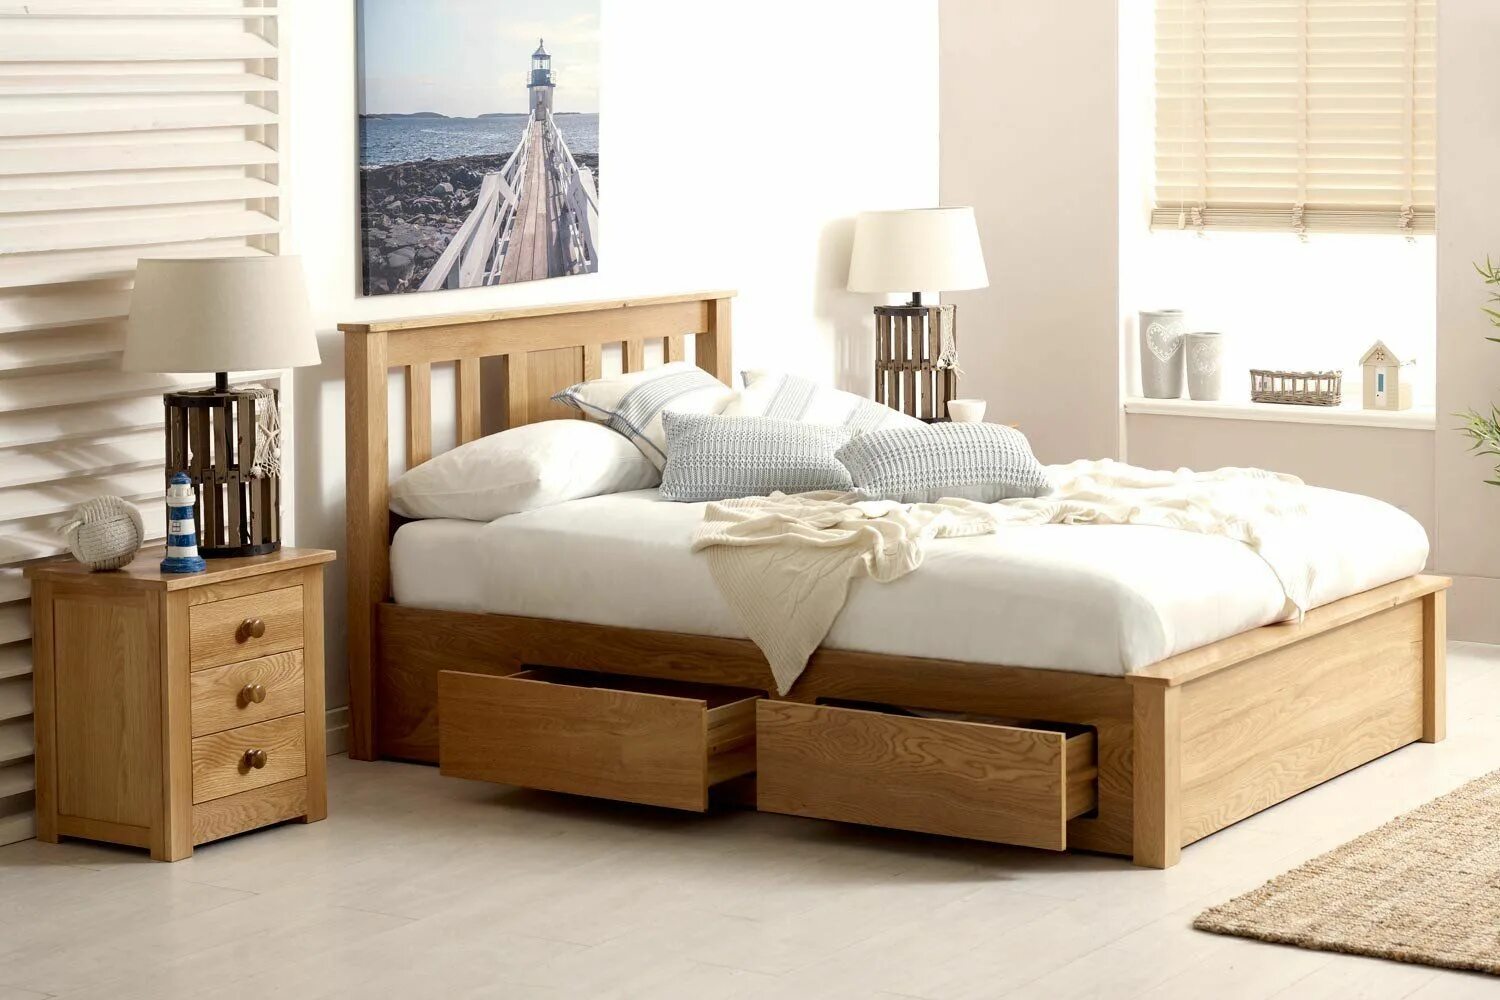 Кровать супер Кинг сайз. Кровать деревянная. Деревянная кровать с ящиками. Кровать бежевая деревянная.